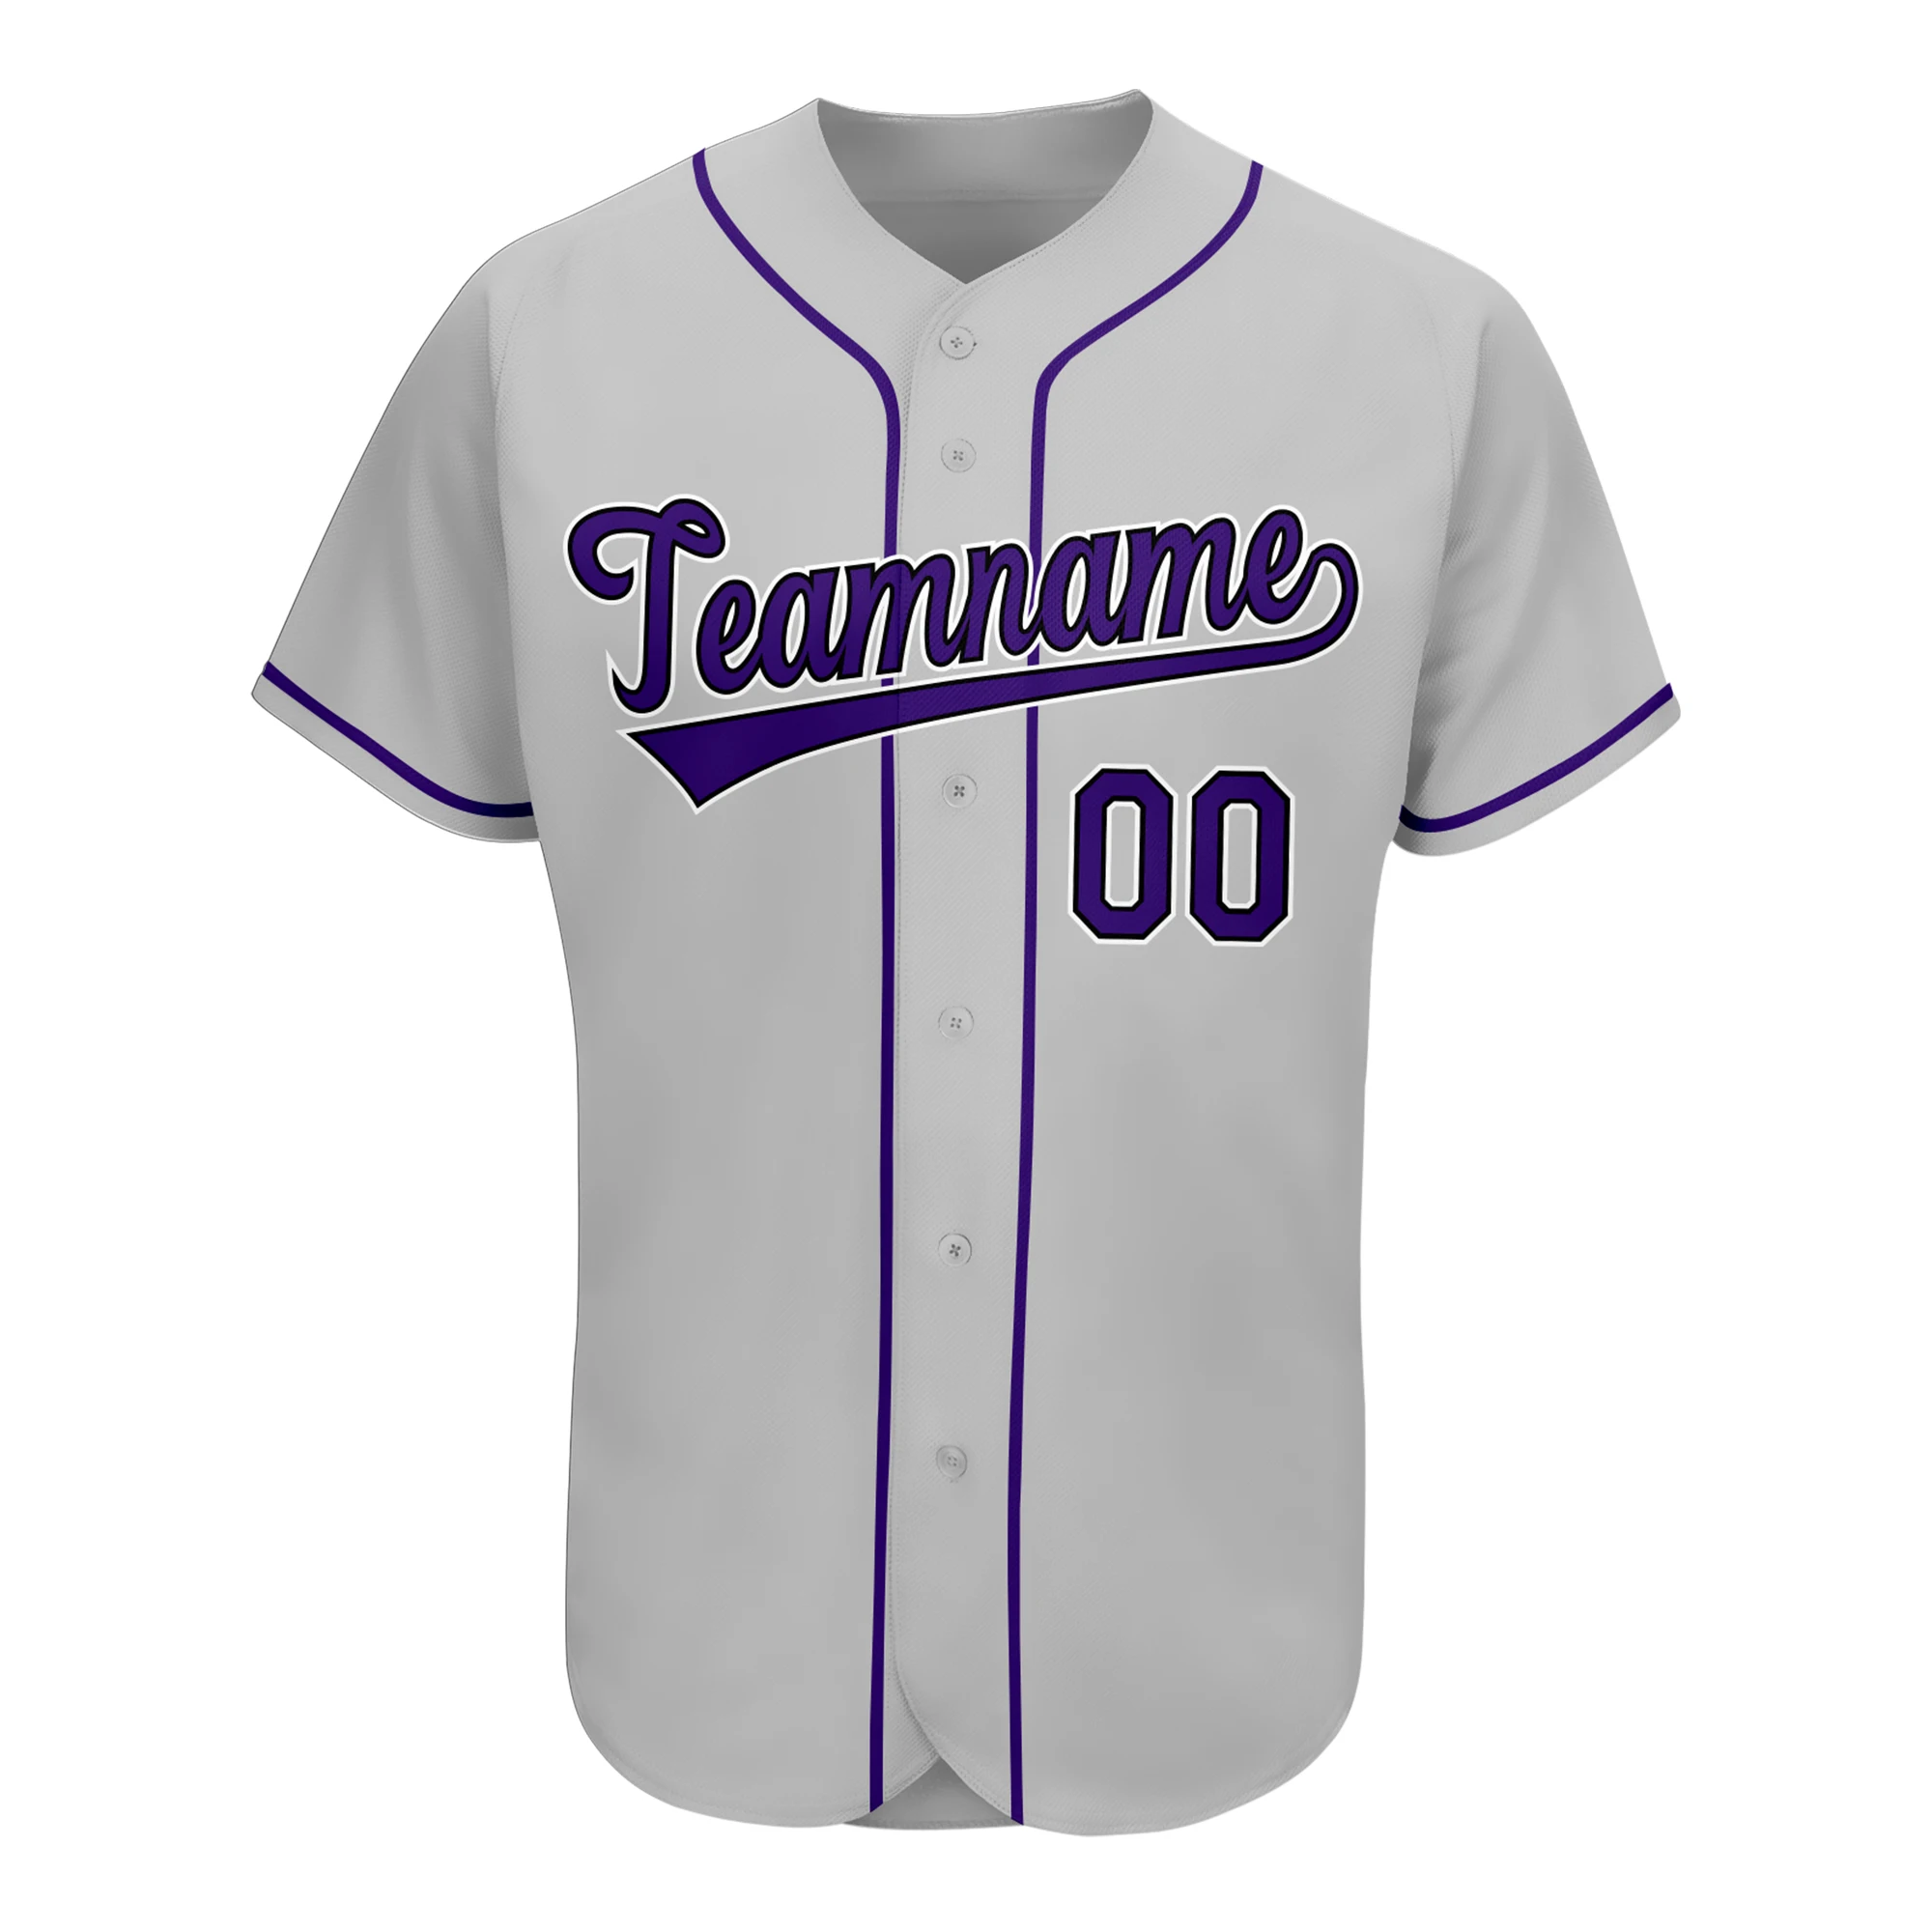 

Бейсбольные футболки на заказ индивидуальный дизайн ваше имя/номер напечатанные рубашки Софтбол тренировочная униформа для мужчин/женщин мужчин/молодежи